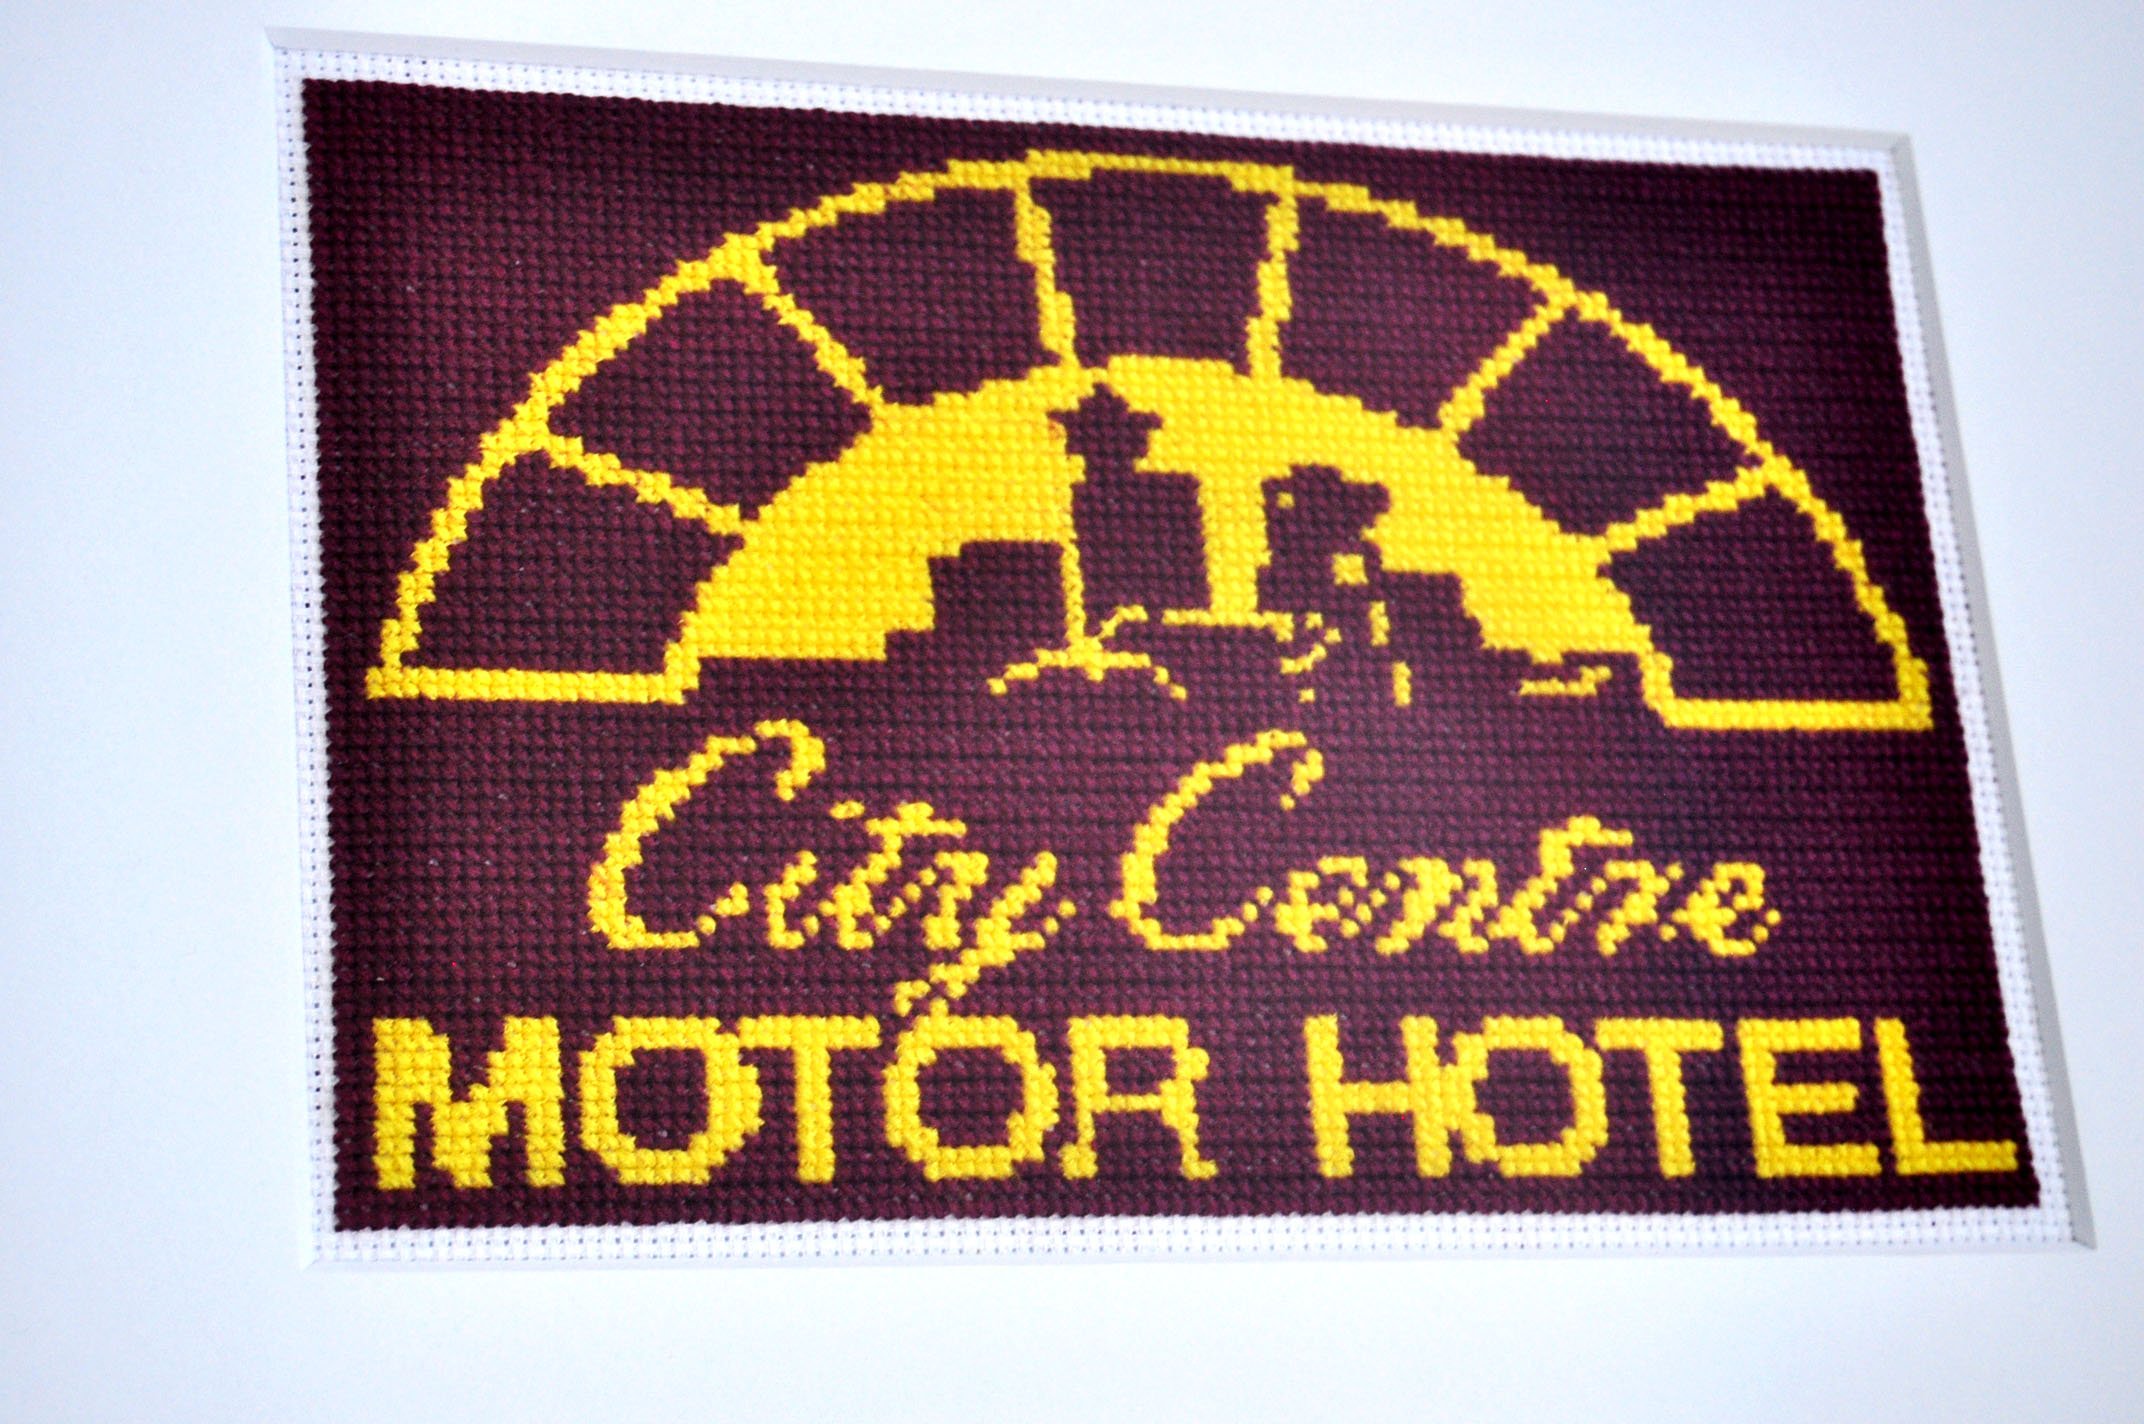 Framed-City Centre Motor Hotel-detail.jpg